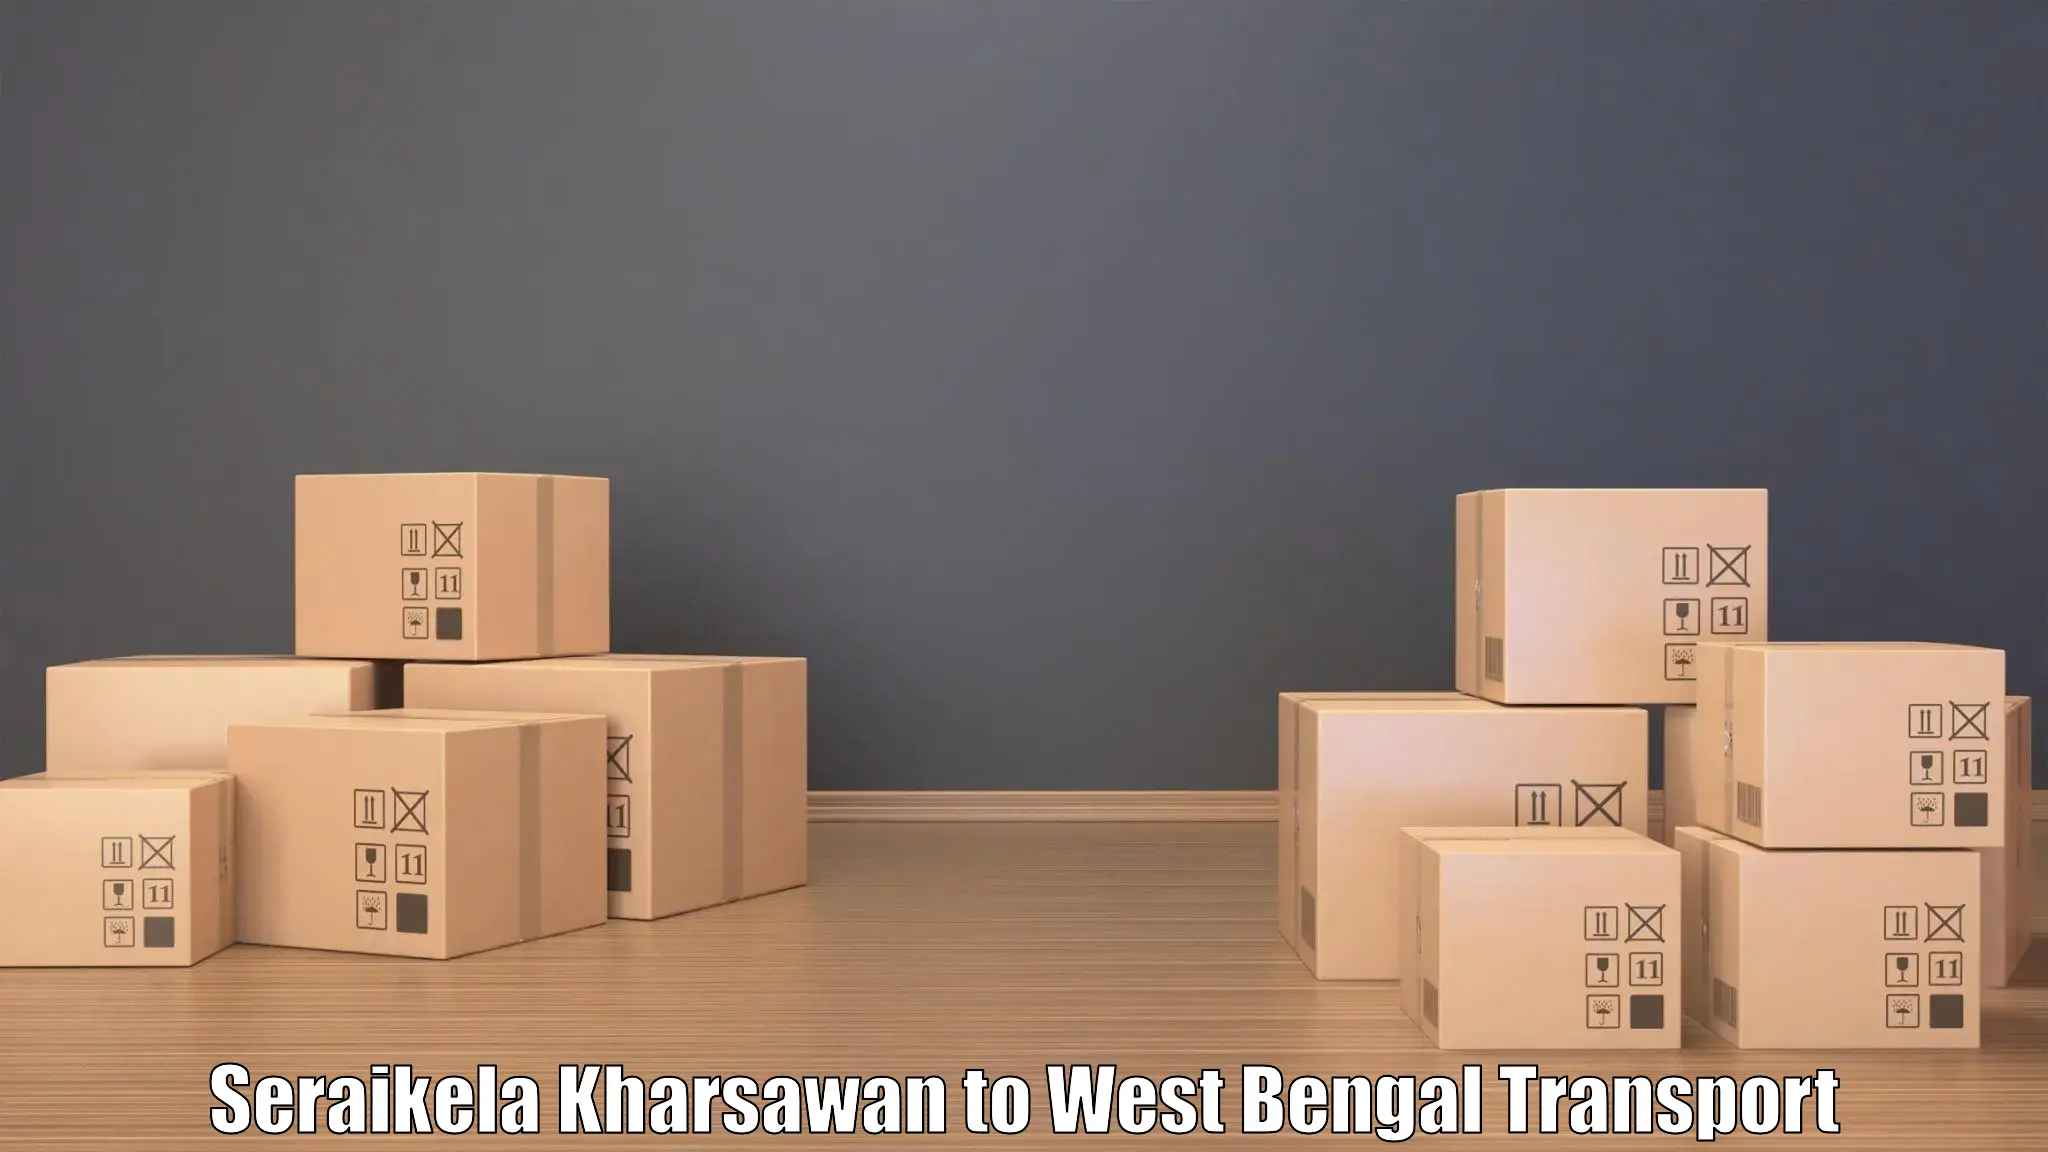 Online transport service Seraikela Kharsawan to Kalchini